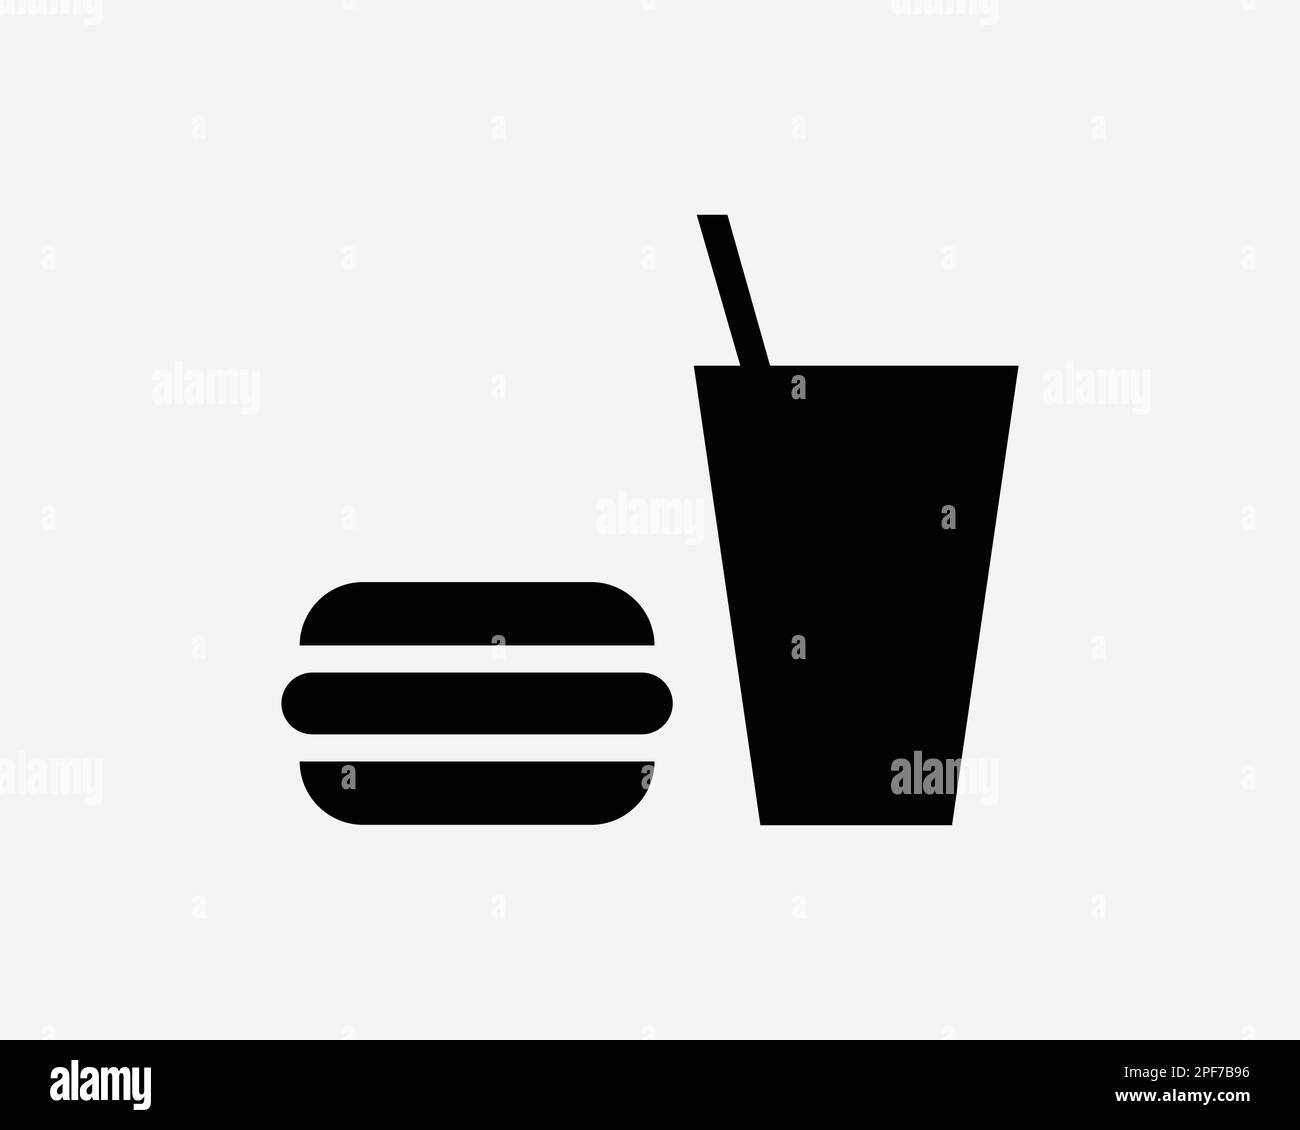 Essen und Trinken Icon Burger Soda Cup Erfrischungsgetränke Pop Hamburger Schwarzweiß Silhouettensymbol Schild GrafikClipart Bildmaterial Piktogramm Vektor Stock Vektor